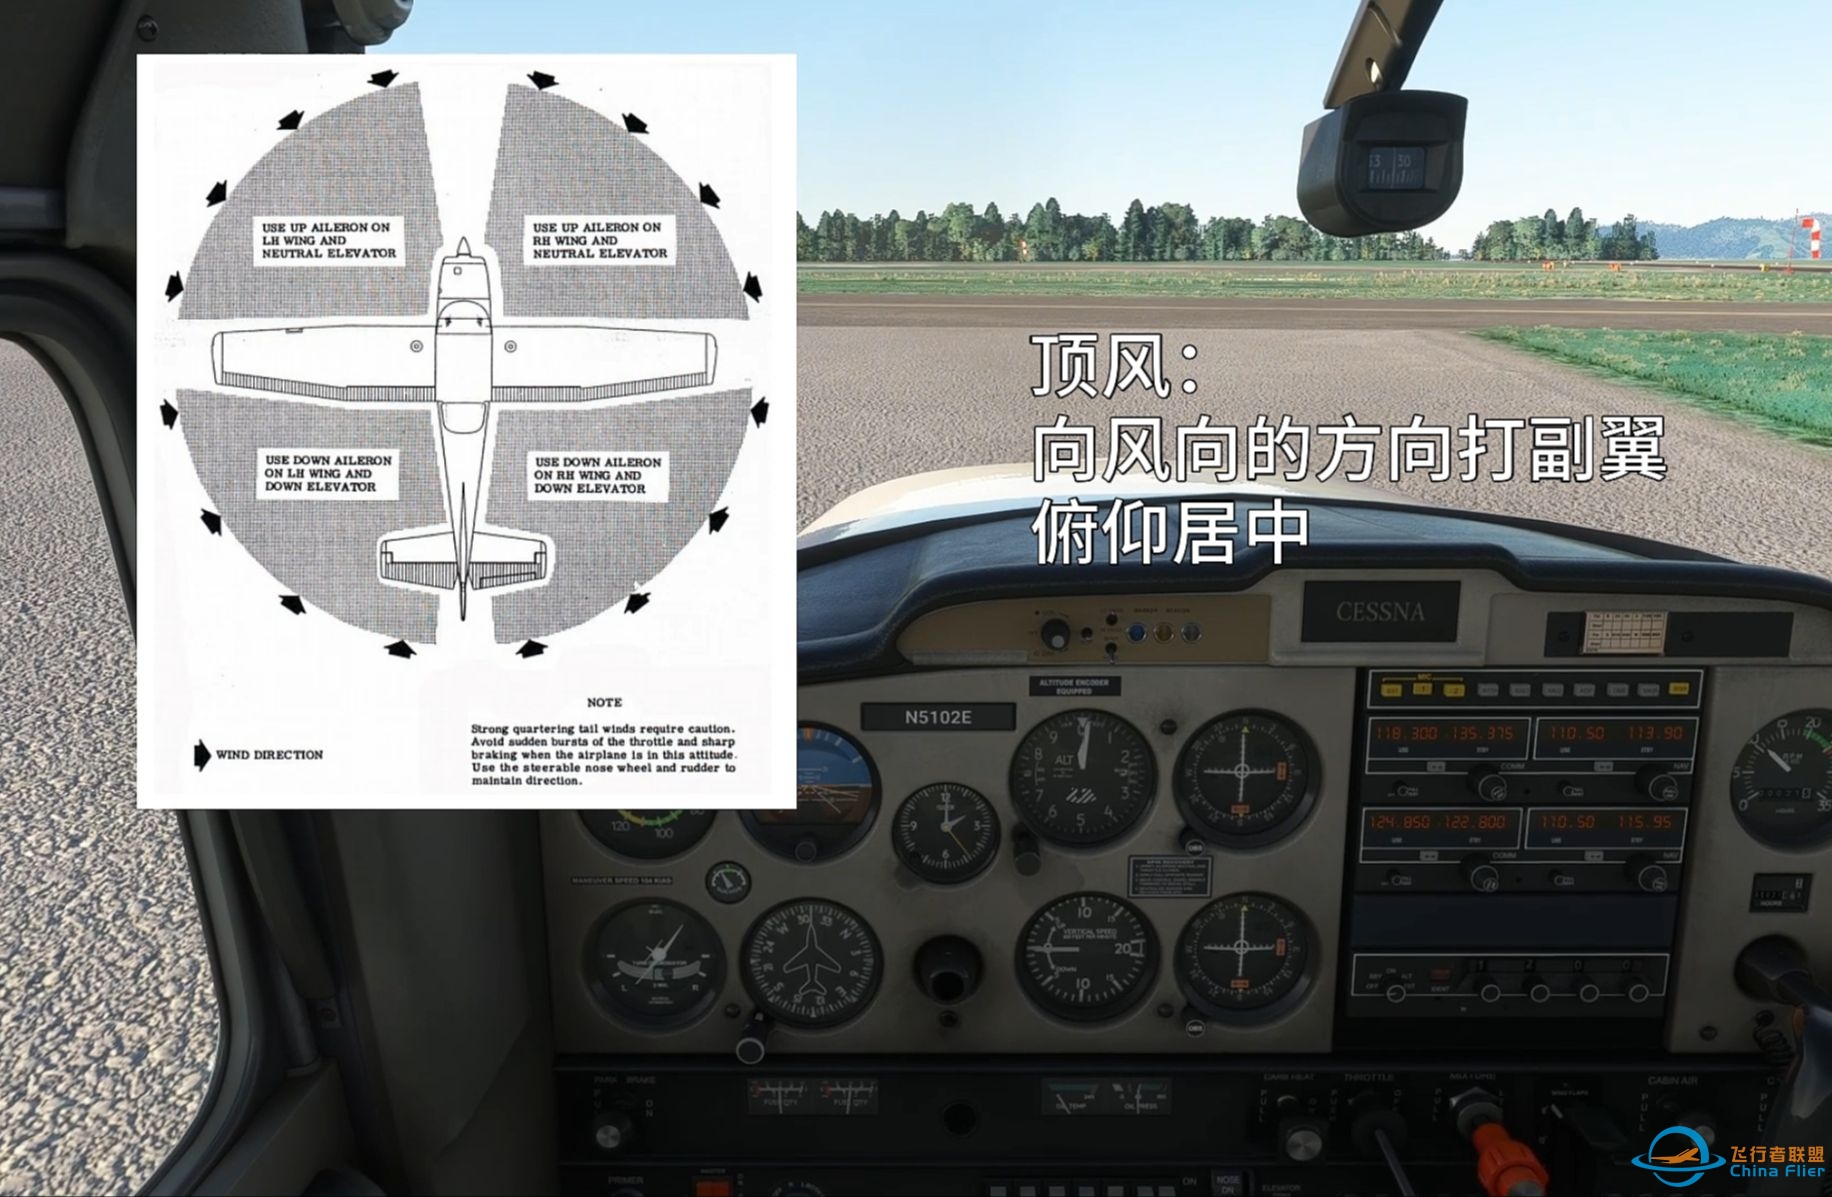 起飞和降落基础 - 让飞行模拟更有仪式感 - 冷舱启动与地面滑行-4206 